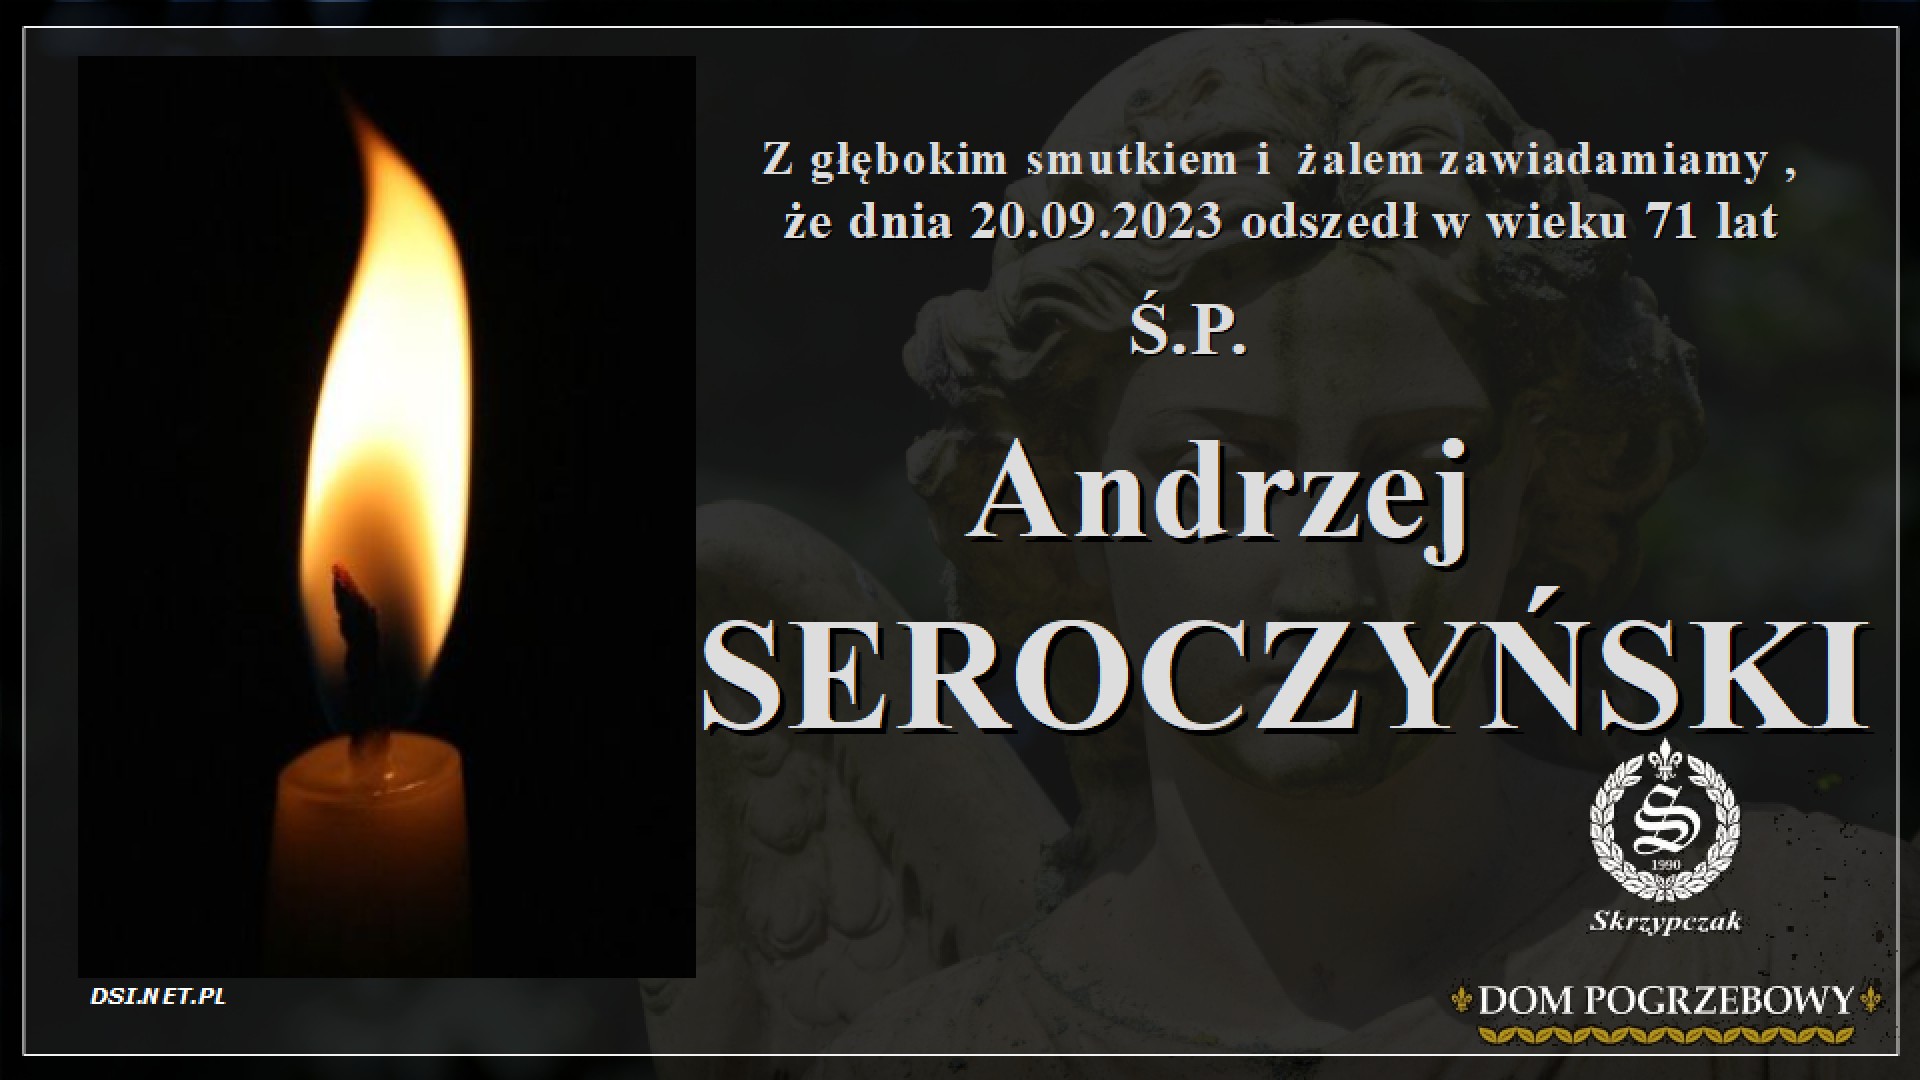 Ś.P. Andrzej Seroczyński